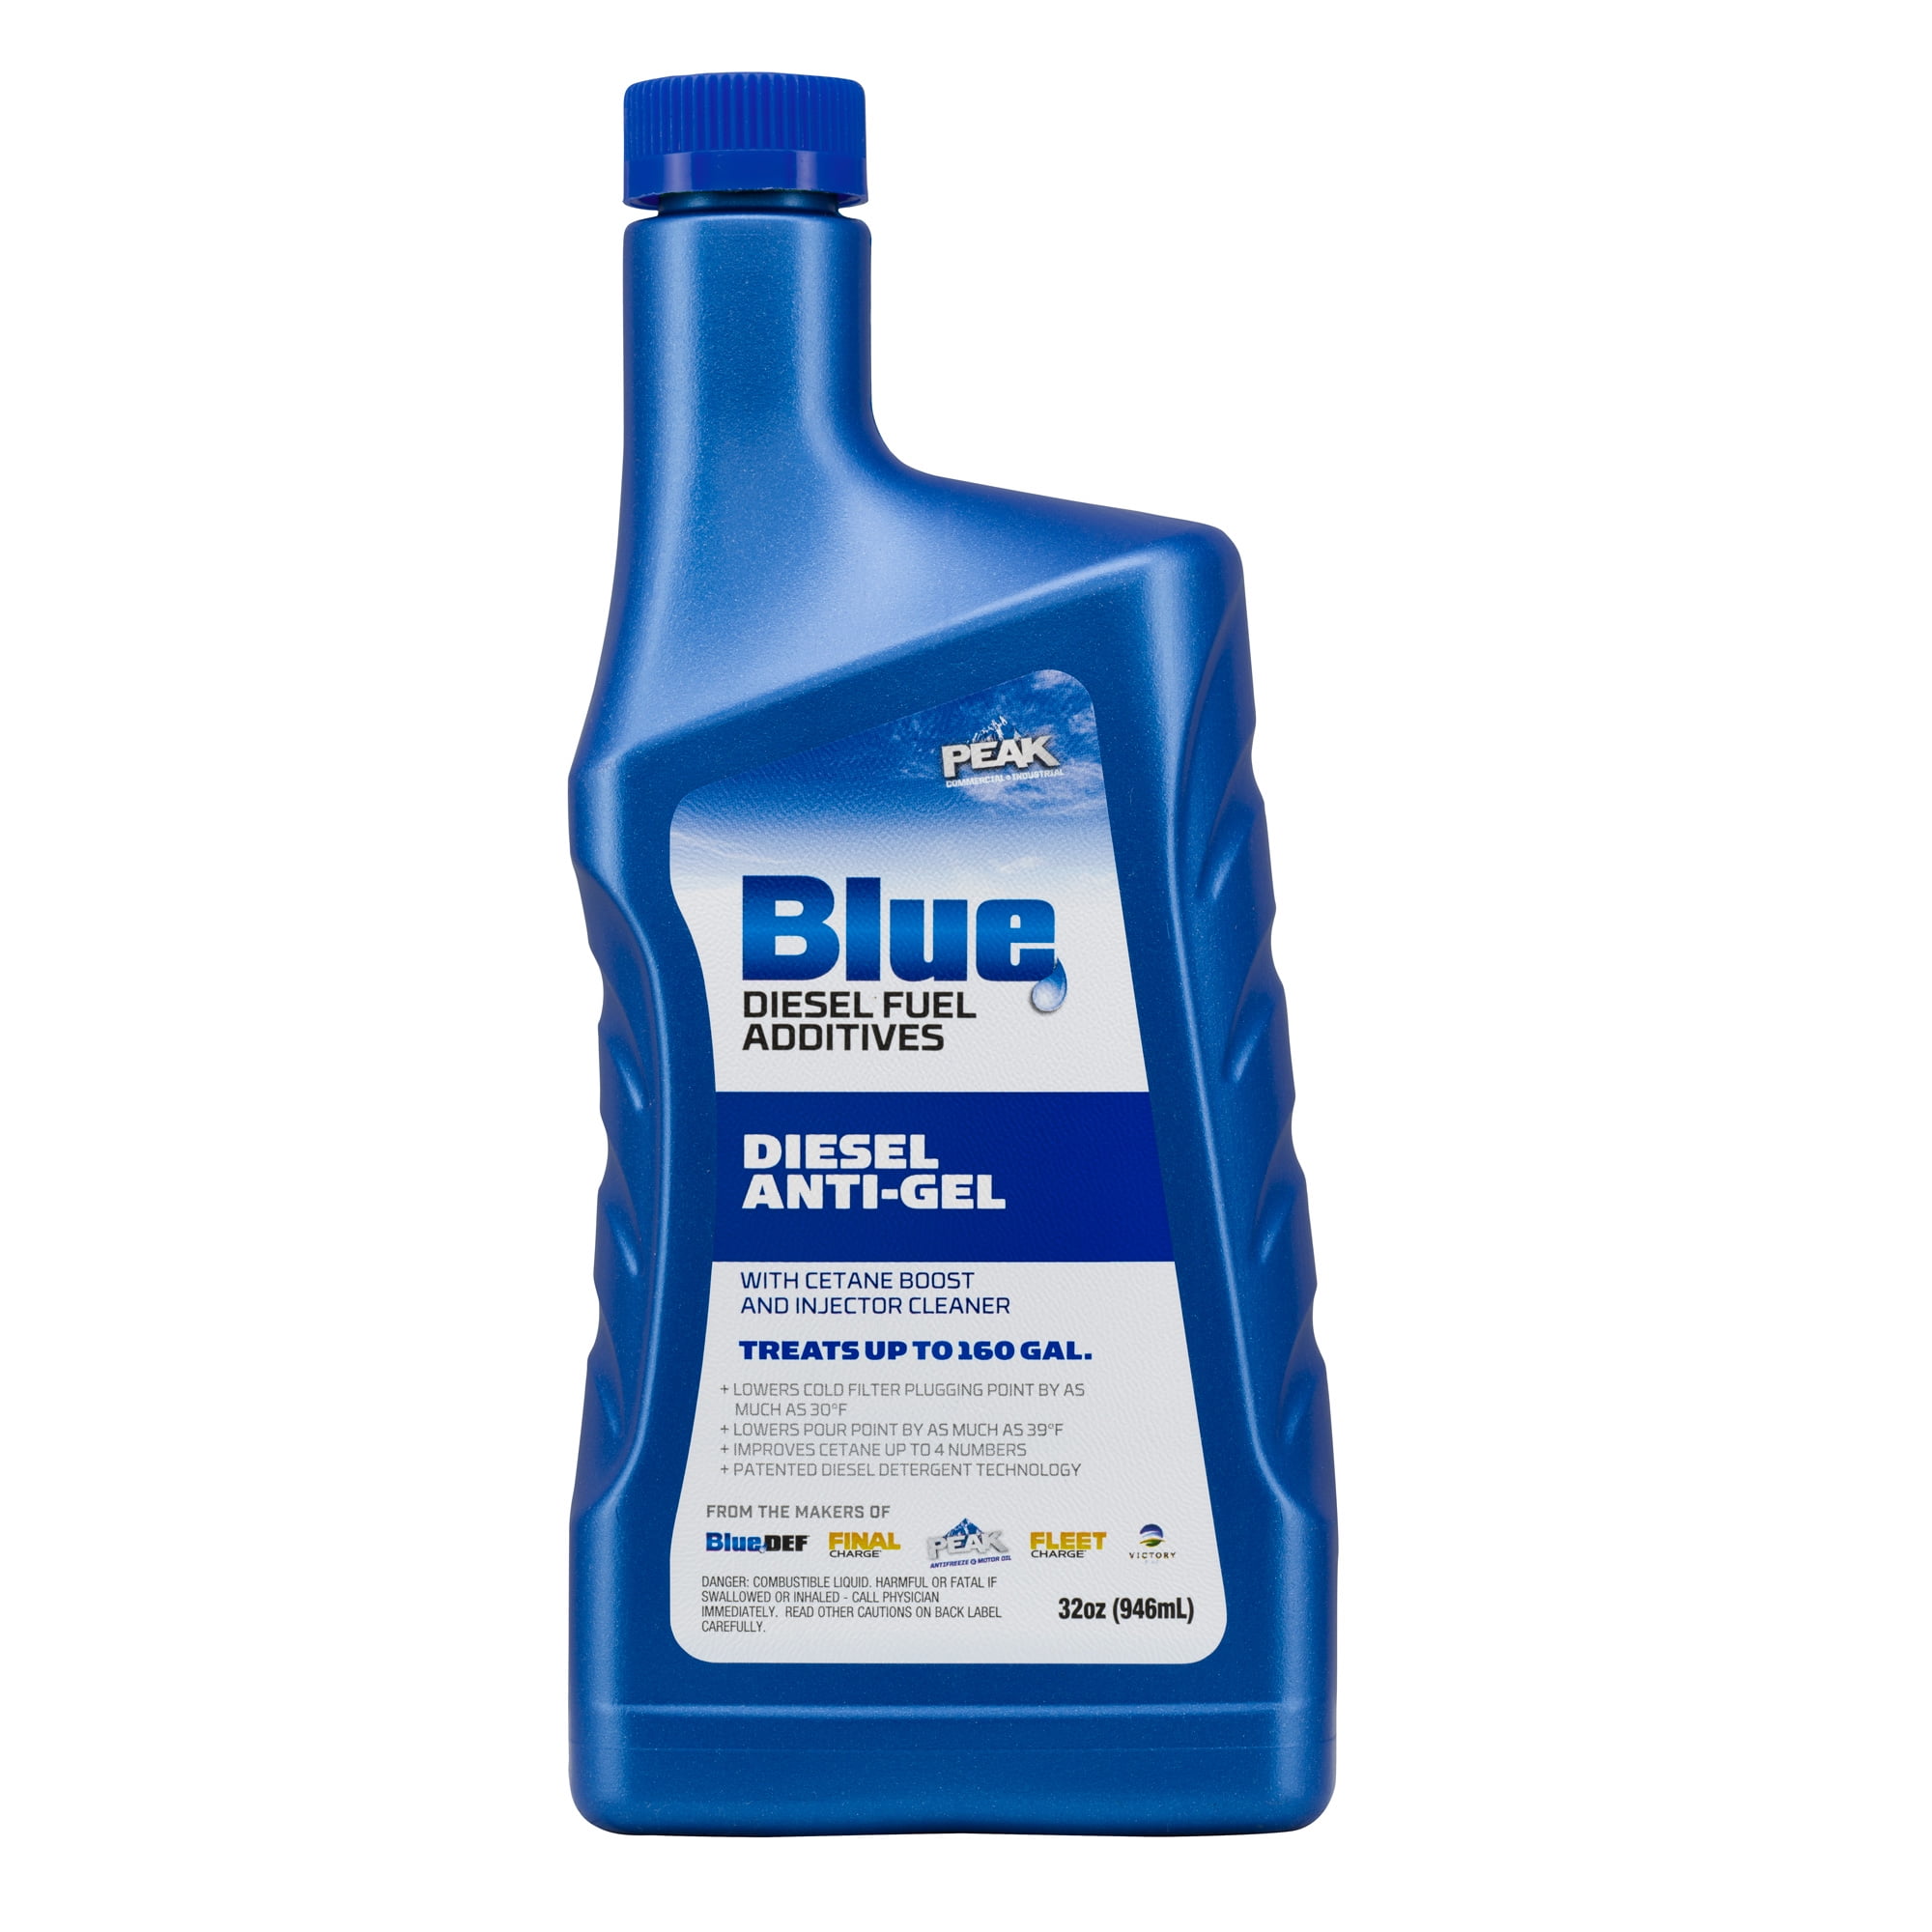 Diesel Anti Gel 1:200 - bluechemGROUP